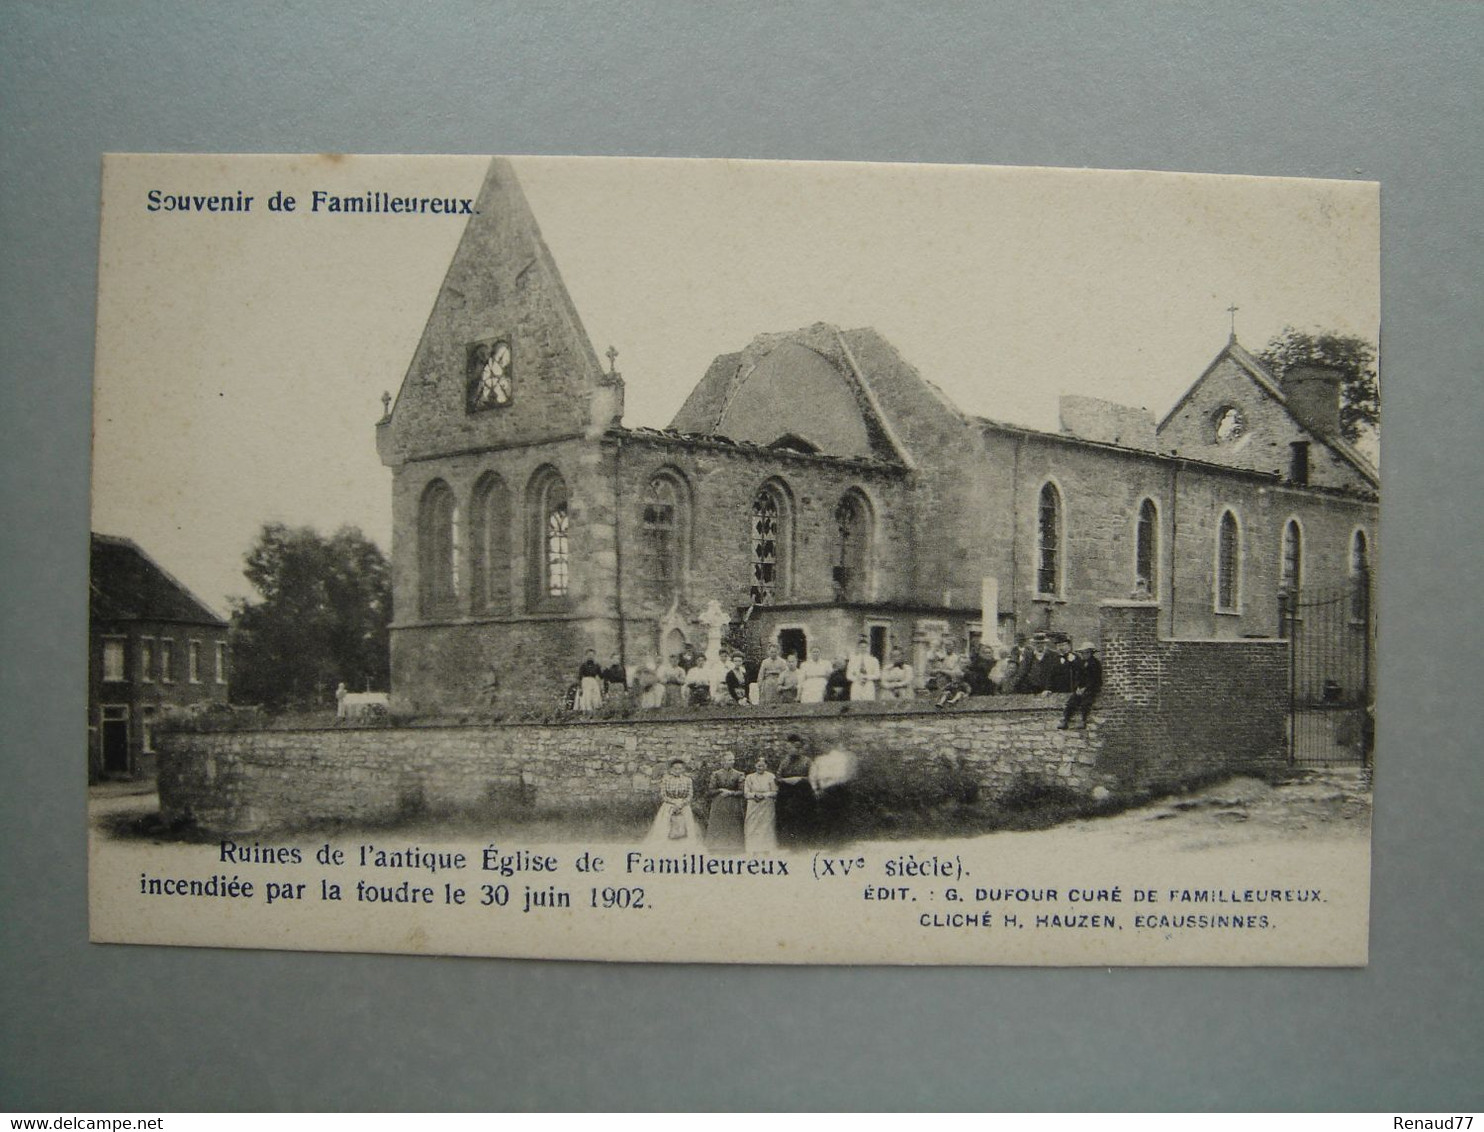 Familleureux - Ruines De L'antique Eglise De Familleureux Incendiée Par La Foudre Le 30 Juin 1902 - Seneffe